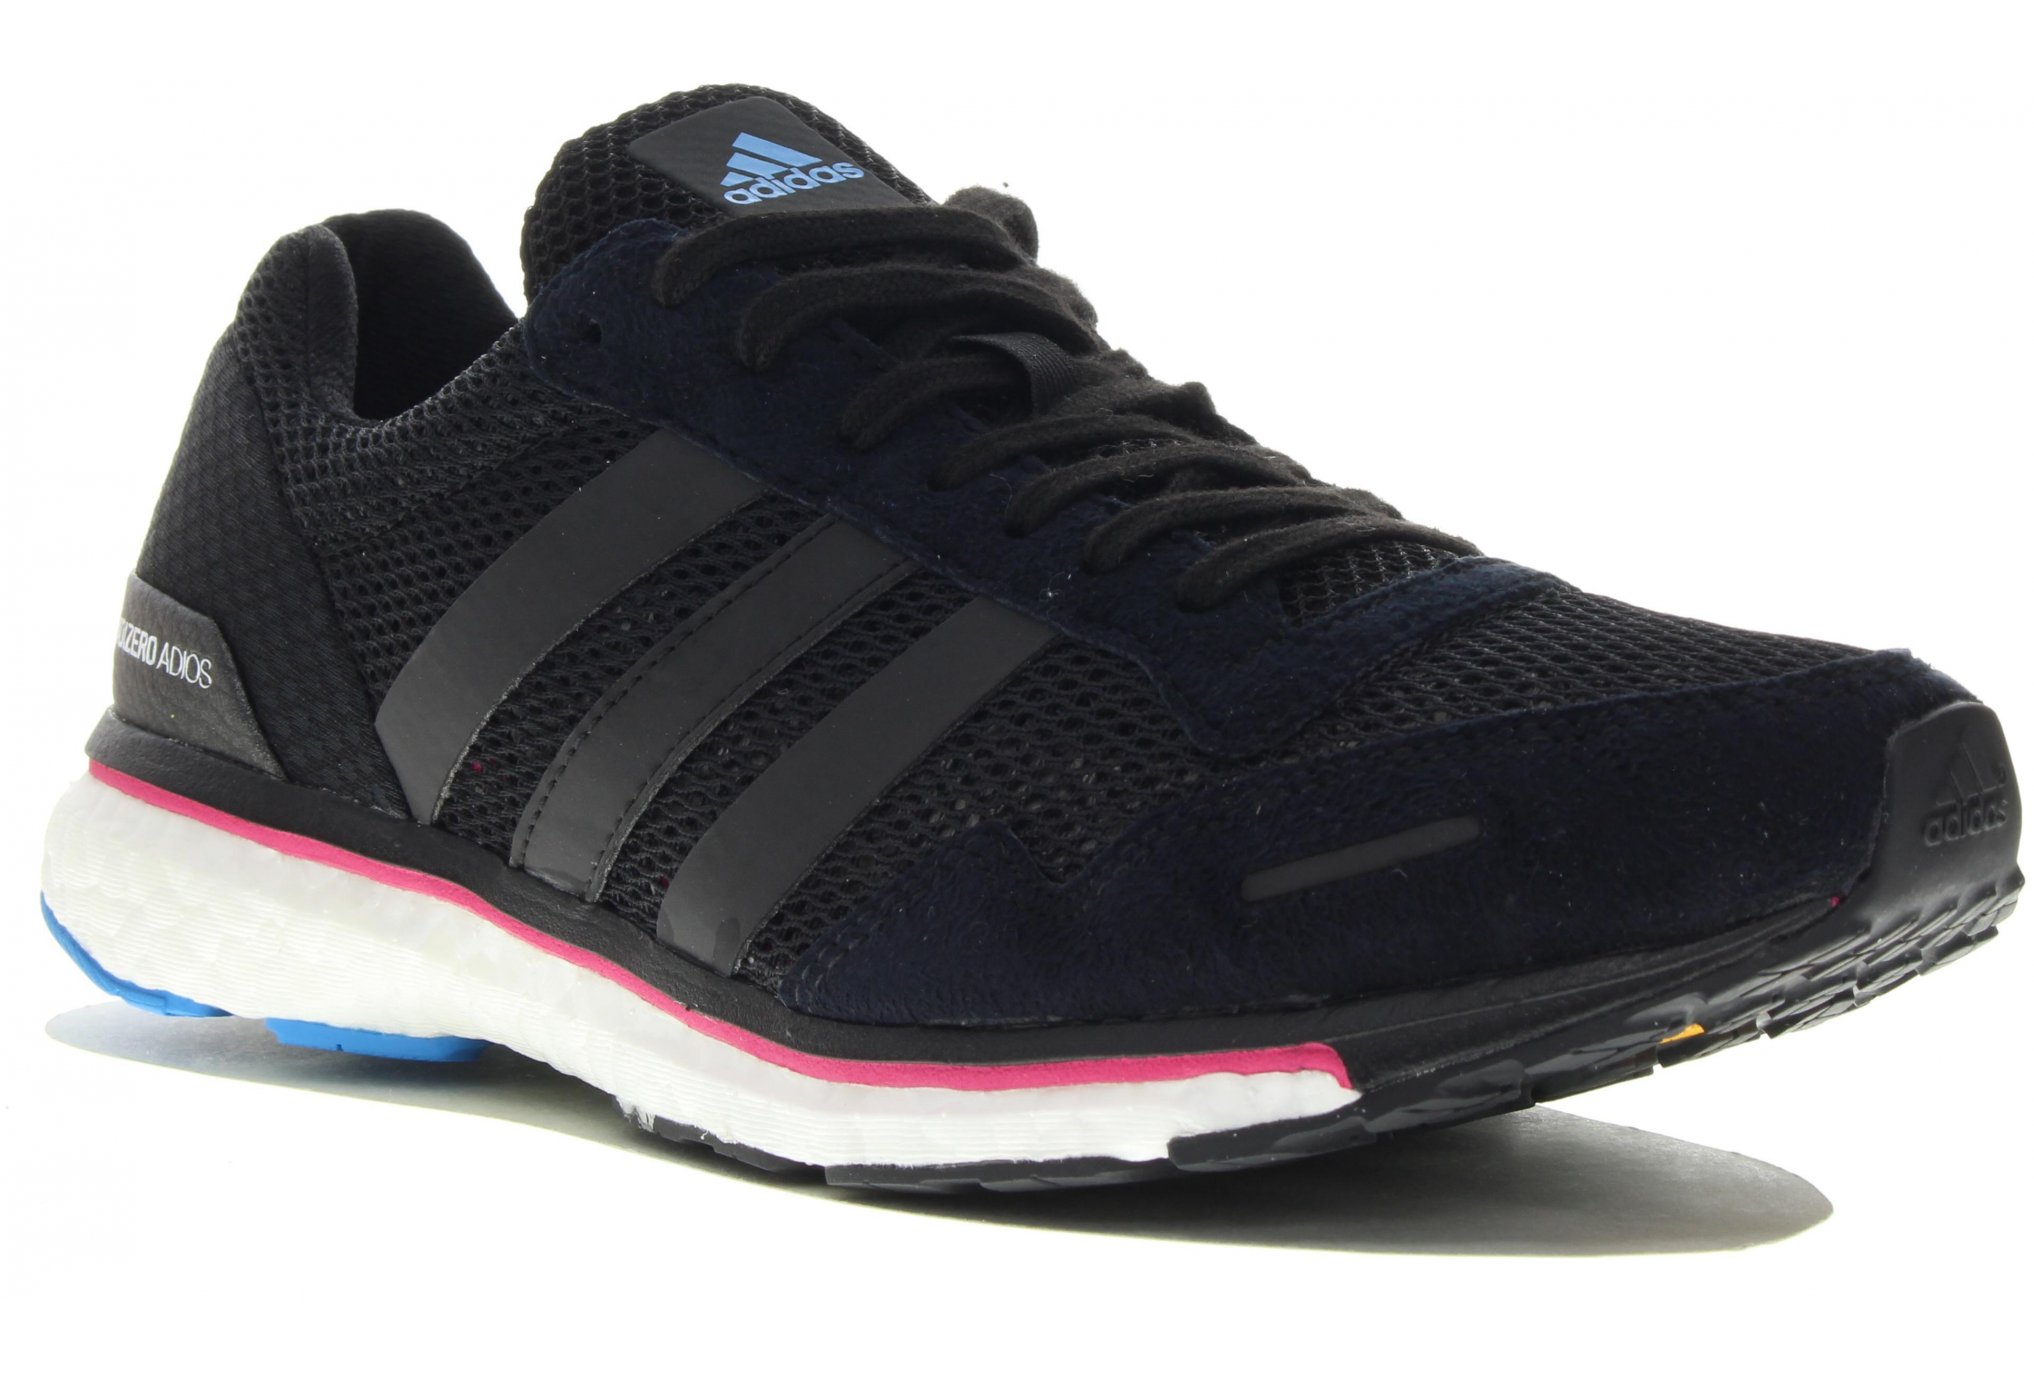 Adidas Adizero Adios Boost 3 Caracteristicas Zapatillas Running Runnea